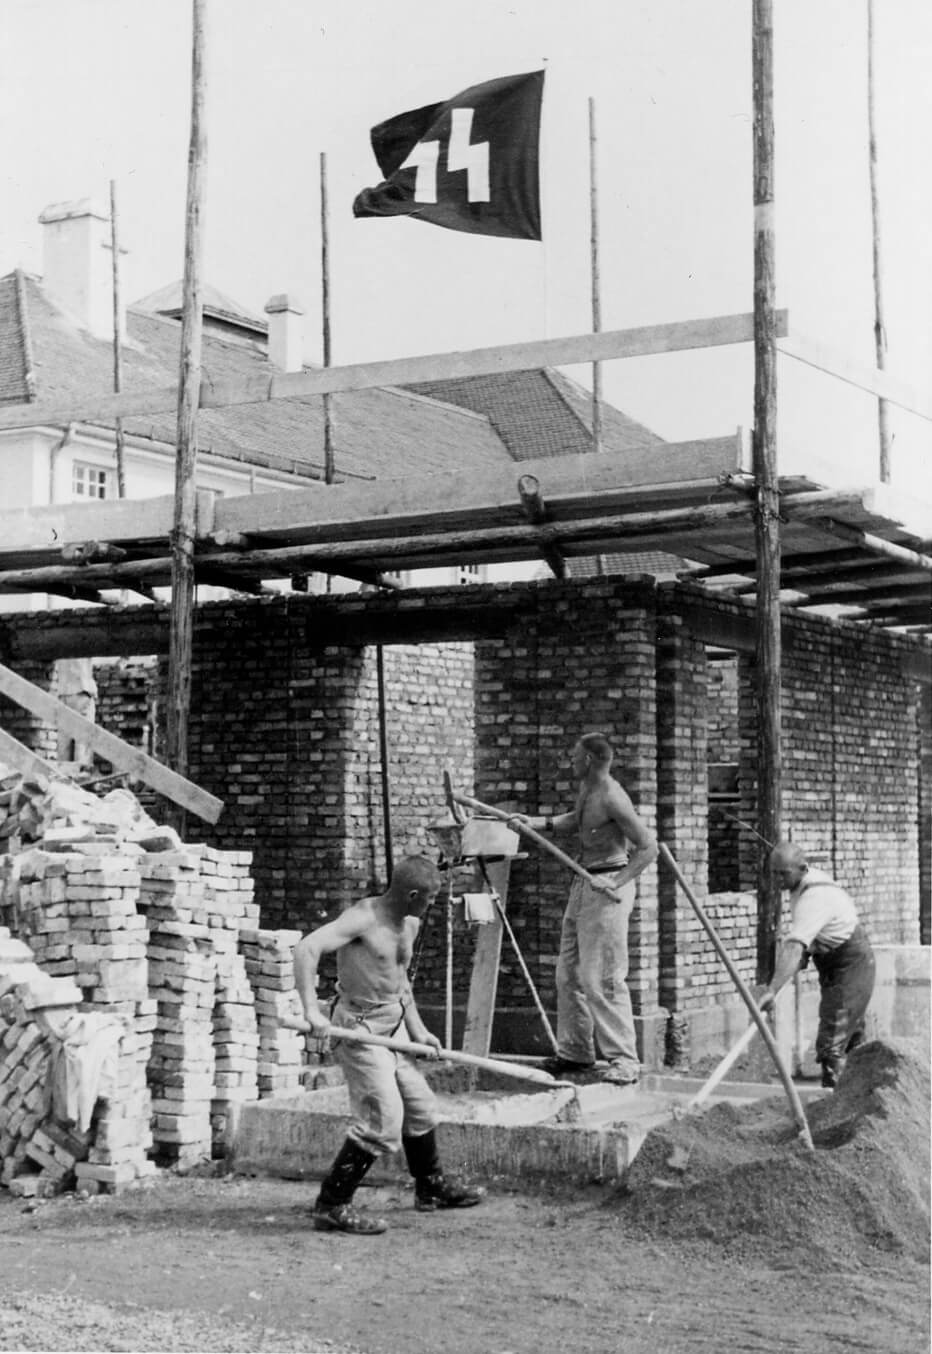 Häftlinge bei Maurerarbeiten im SS-Lager, 1936. SS-Fotograf Friedrich Franz Bauer